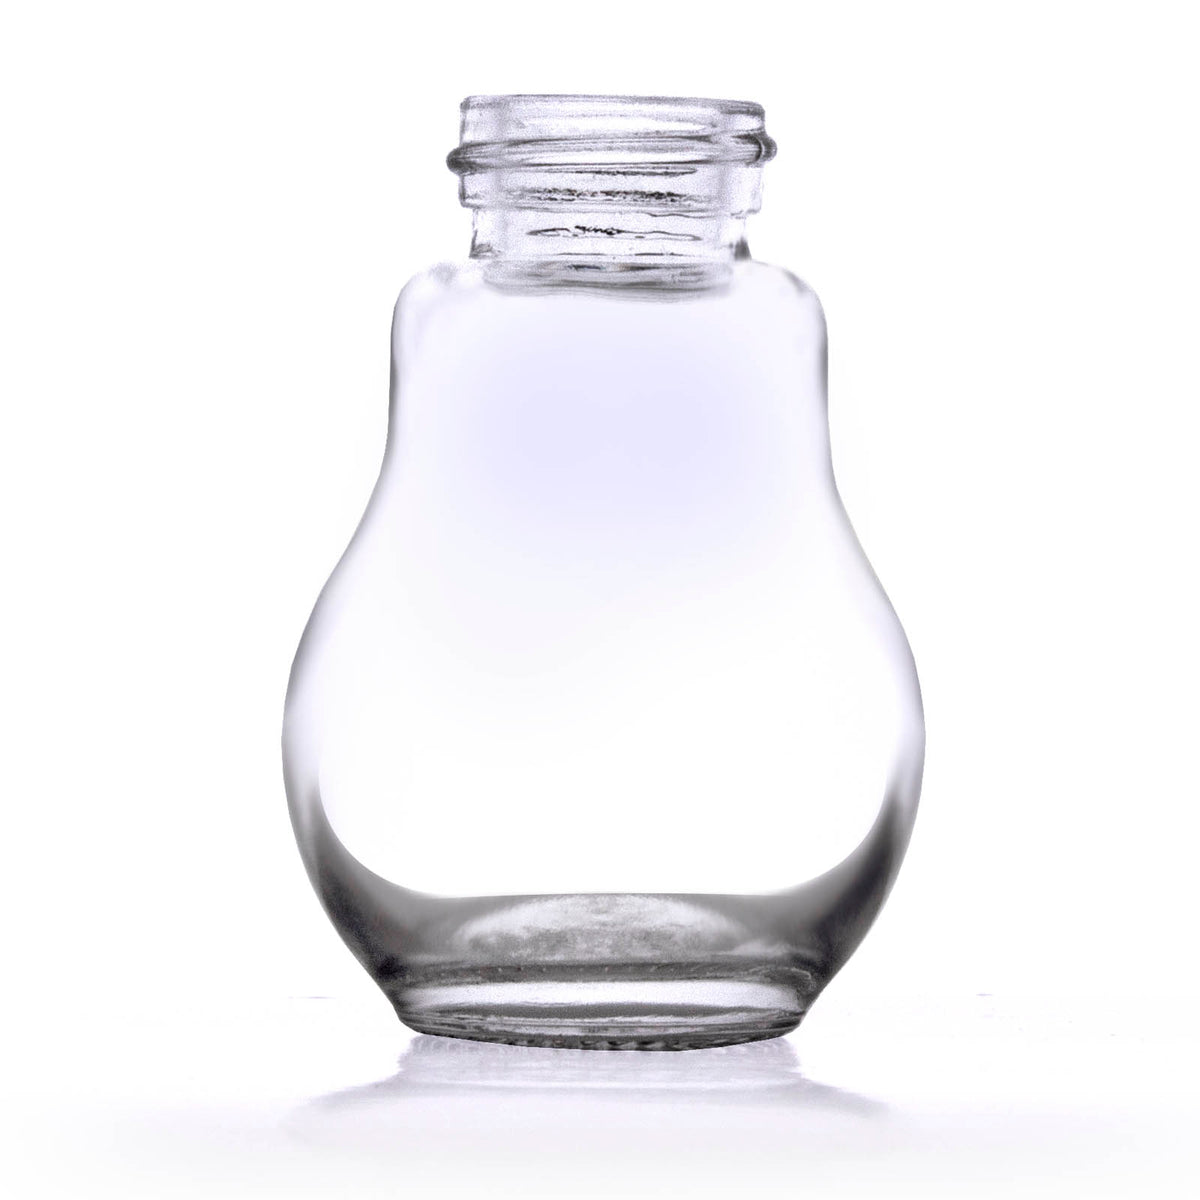 https://barproducts.com/cdn/shop/products/light-bulb-shot-glass-1_1200x1200.jpg?v=1628778485